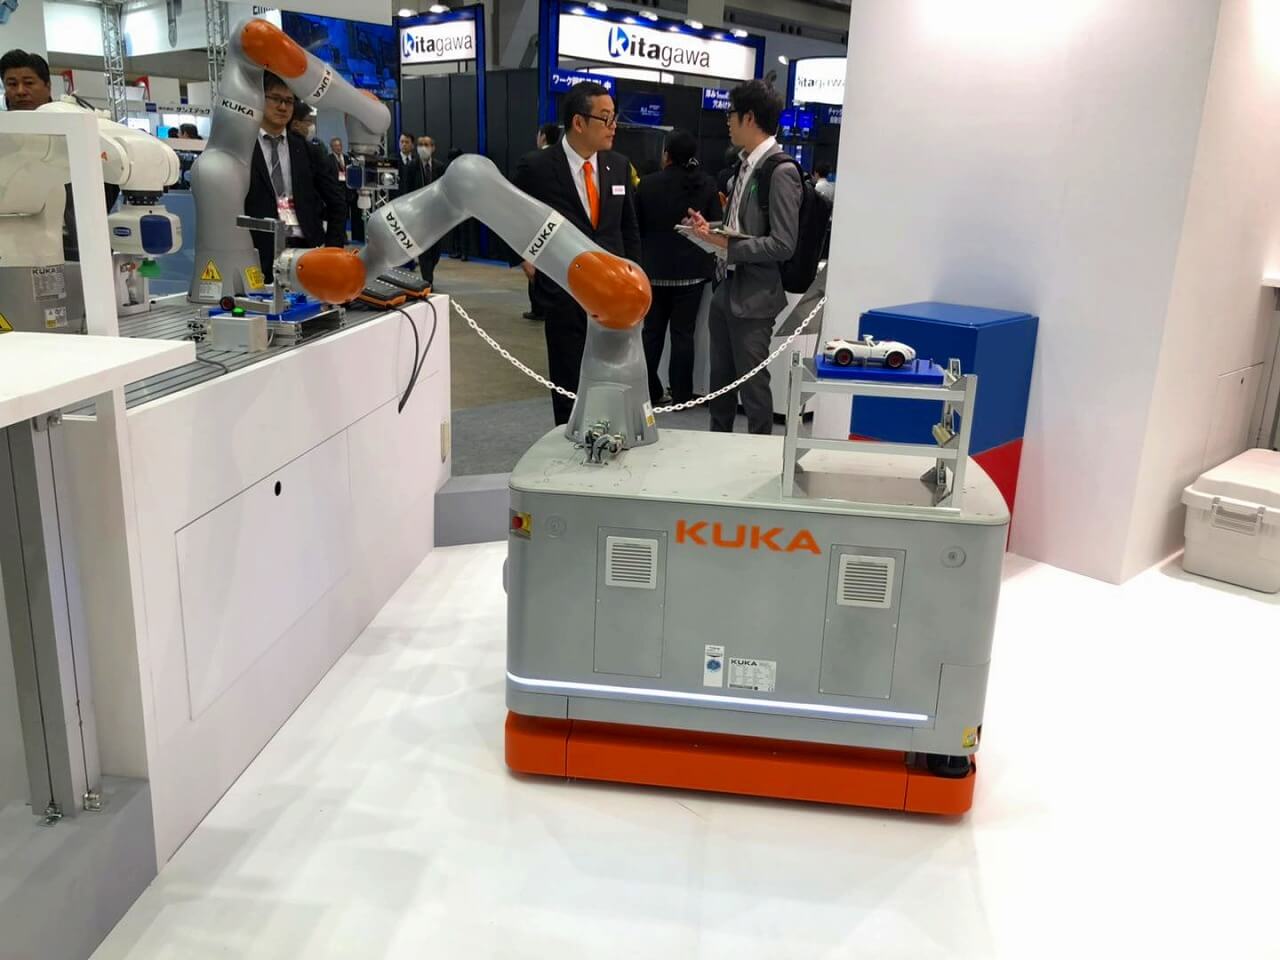 新型机器人解决方案引领东京RoboDEX展 库卡公司的车载机械臂方案